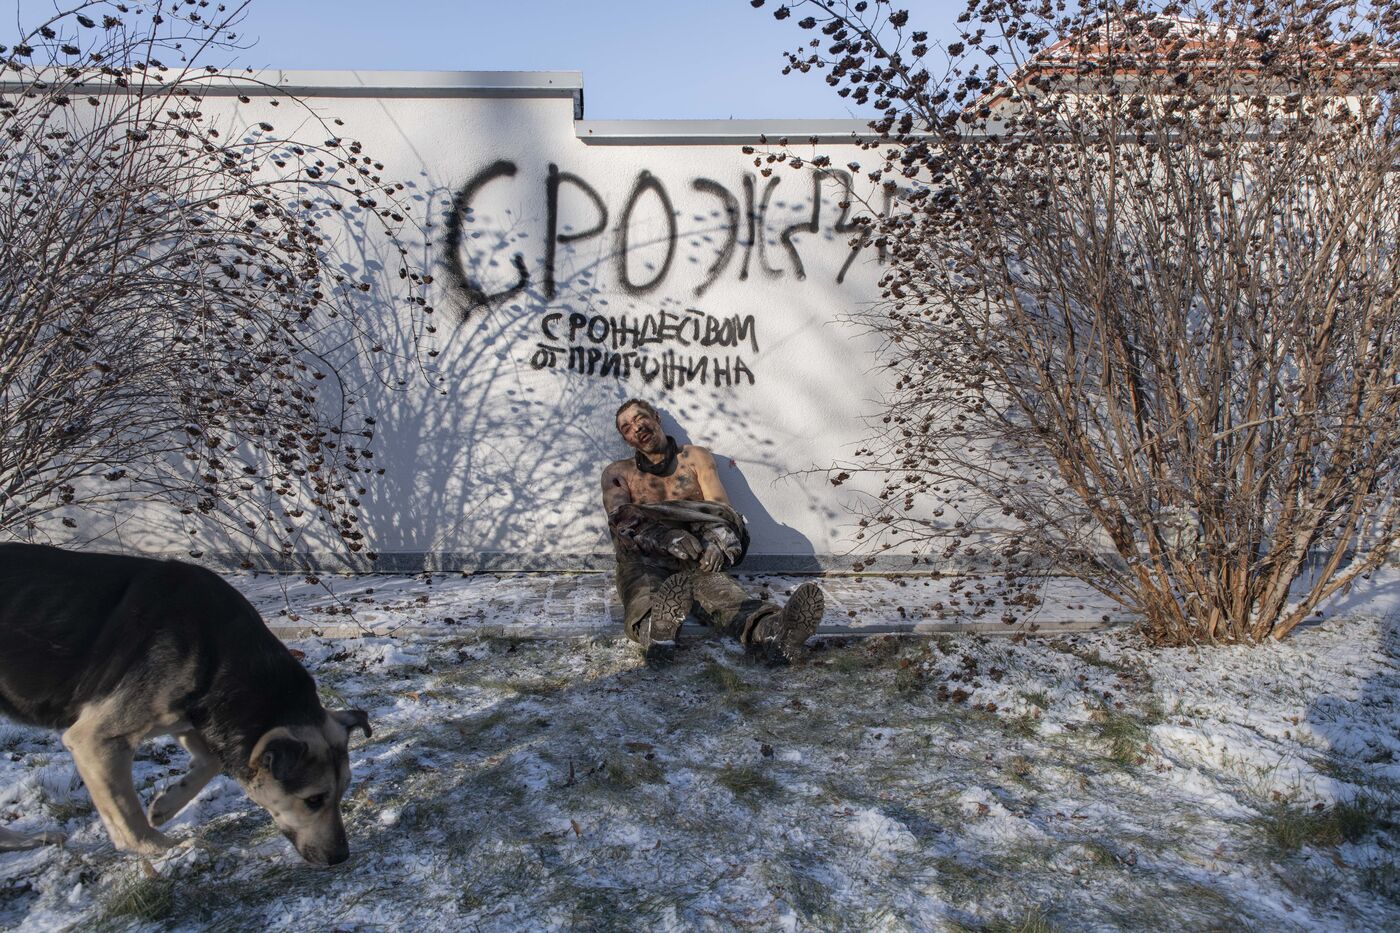 Телеграмм про войну на украине без цензуры фото 91